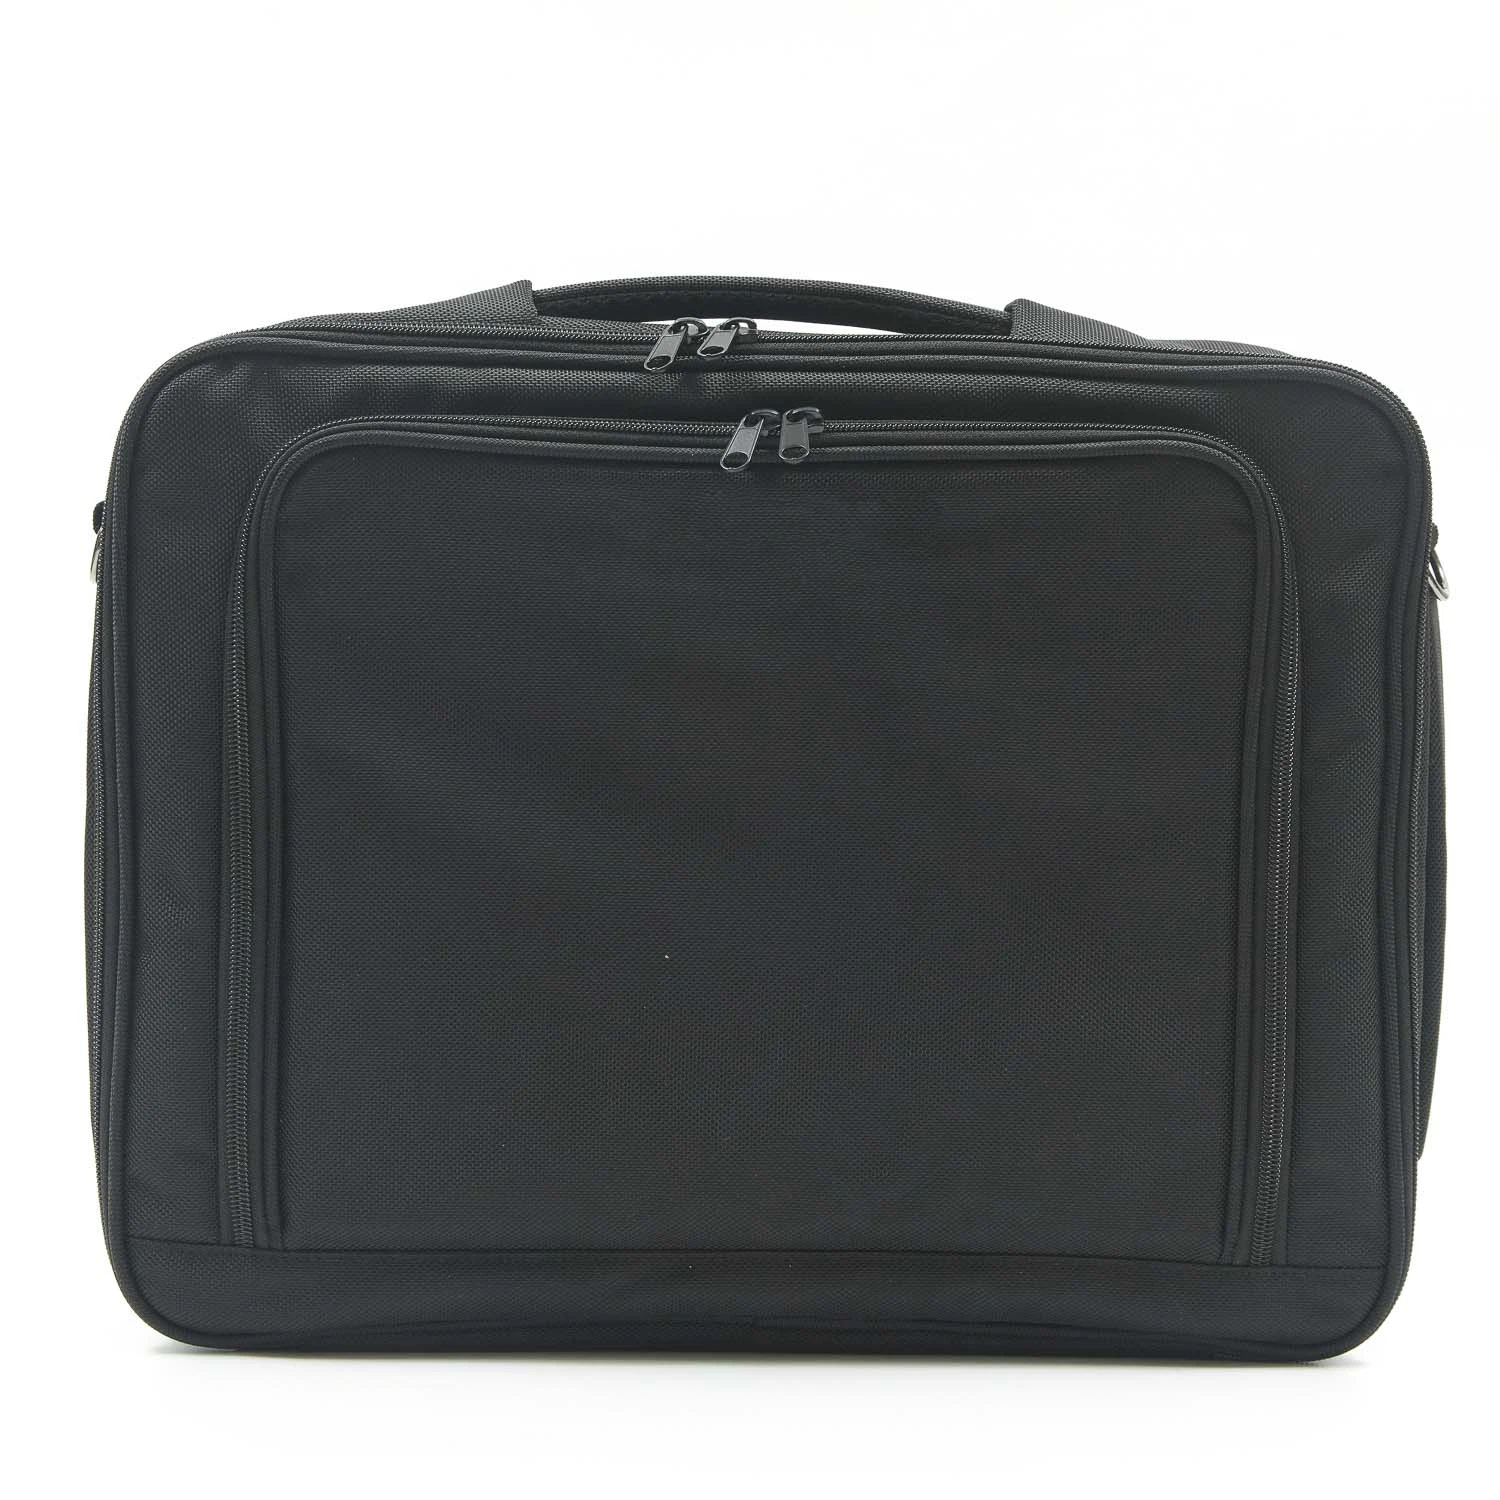 Großhandel Custom Trendy Business Briefcase Männer Casual Laptop Taschen Nylon Umhängetasche